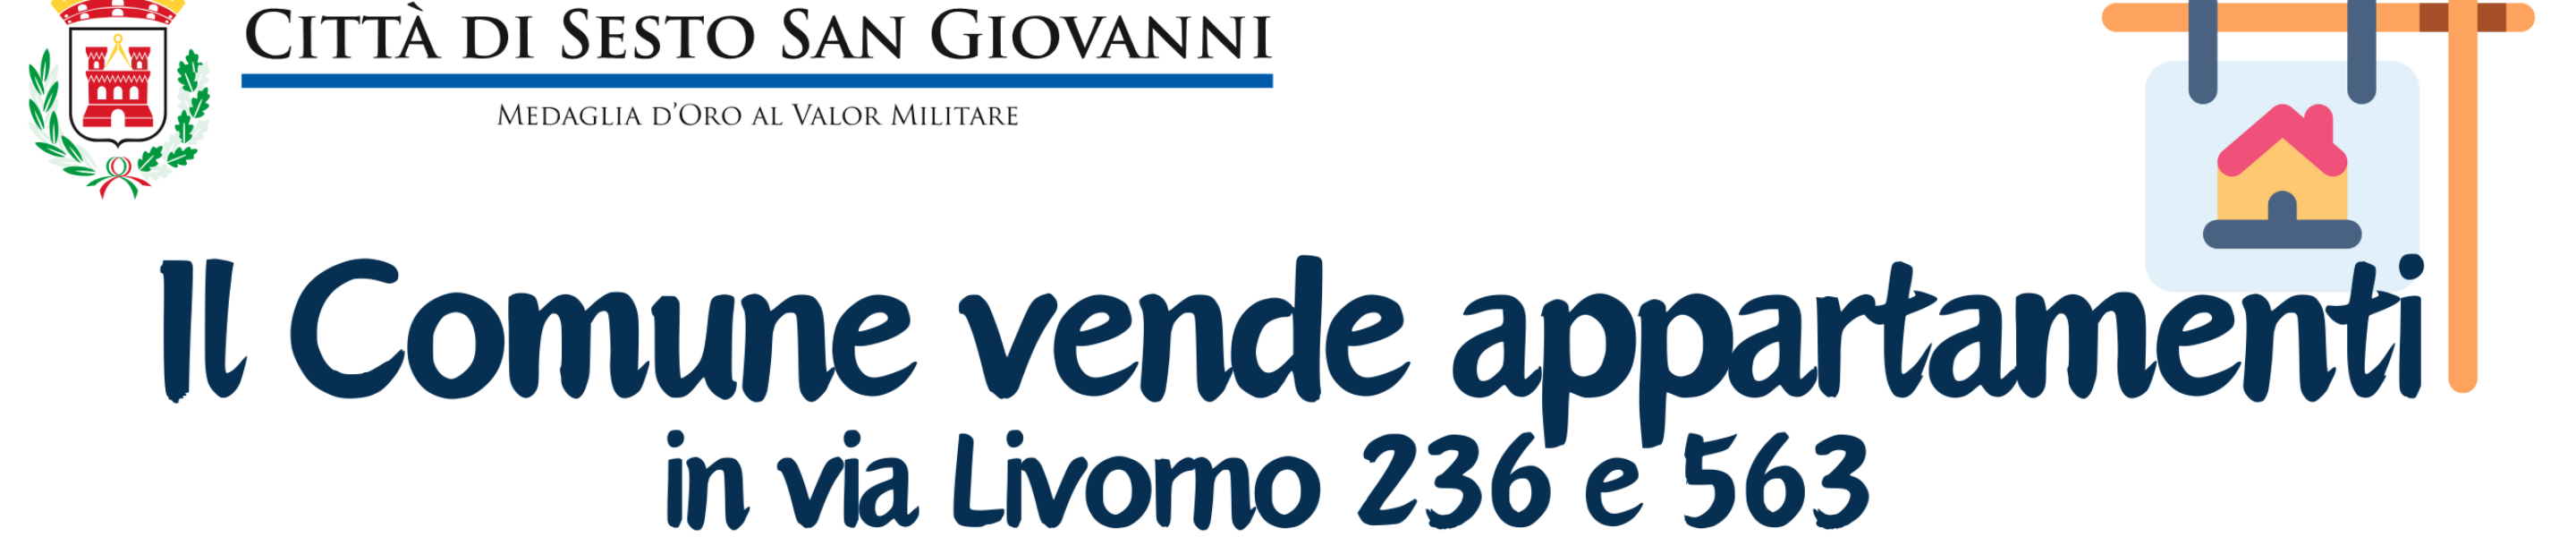 manifesto vendita appartamenti in via Livorno